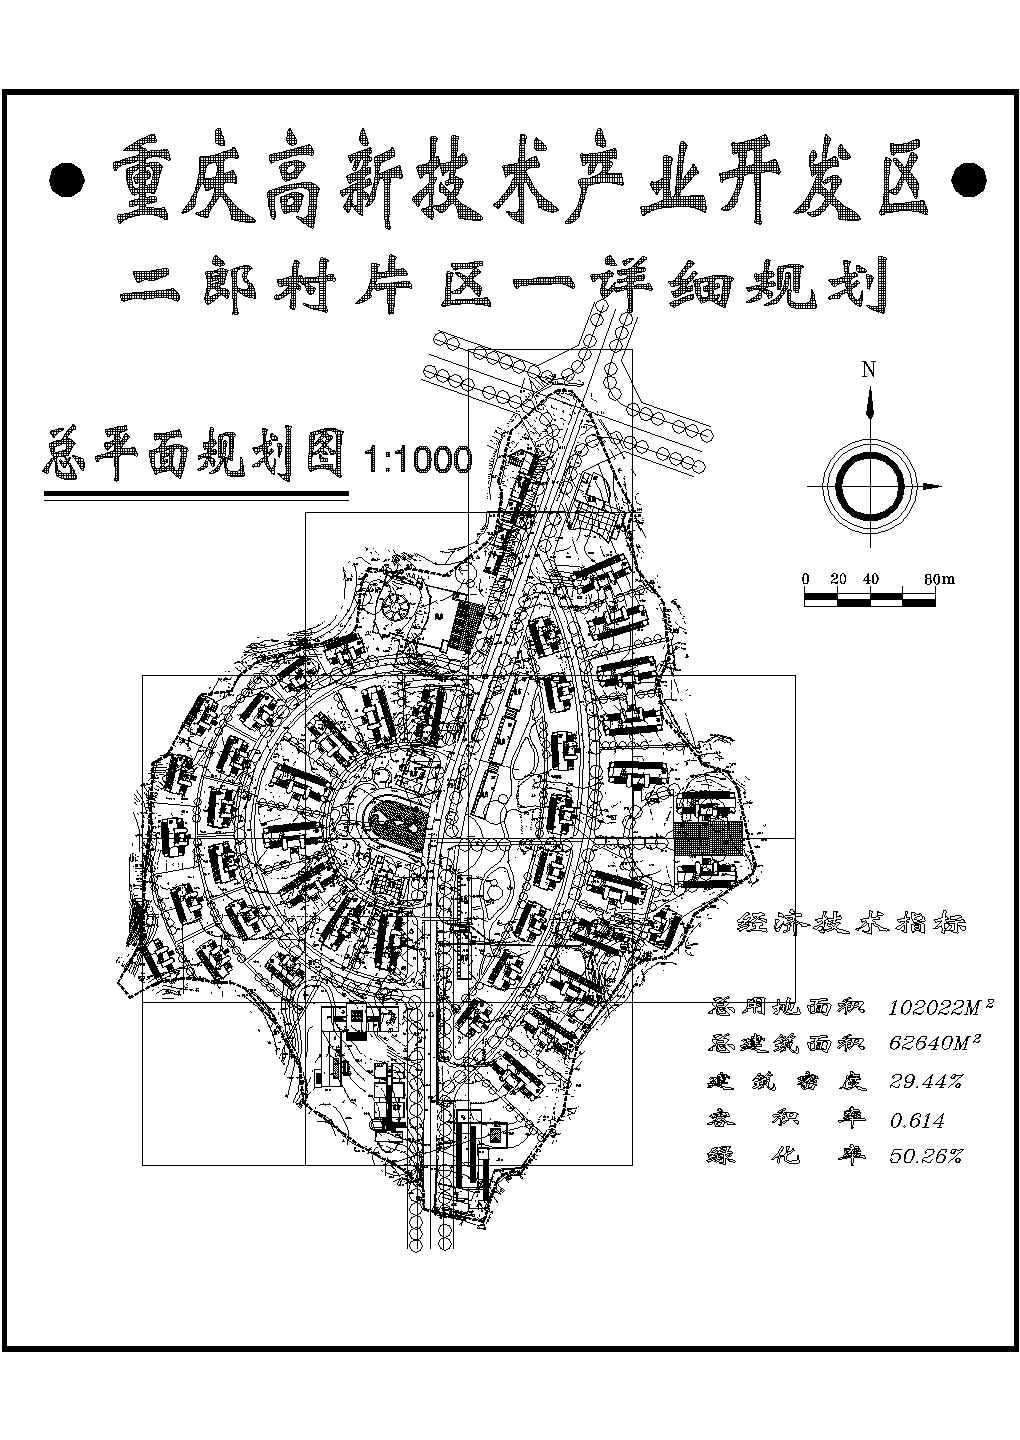 某重庆某开发区CAD建筑设计总平面规划图